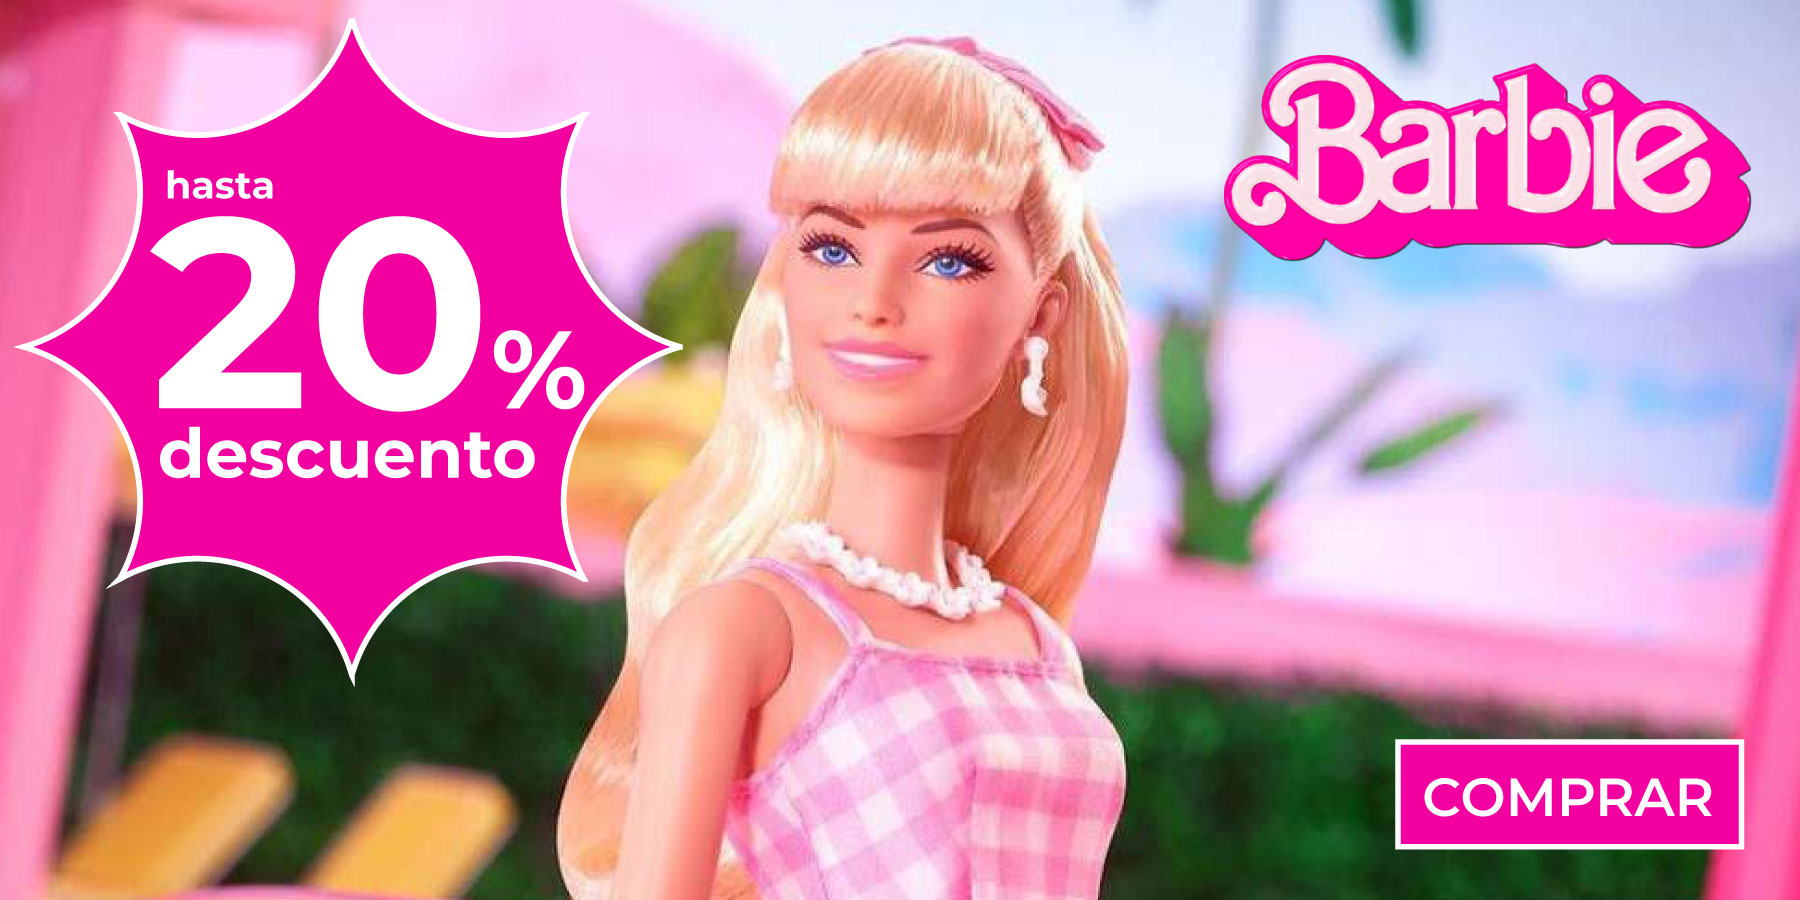 munecas Barbie en promocion